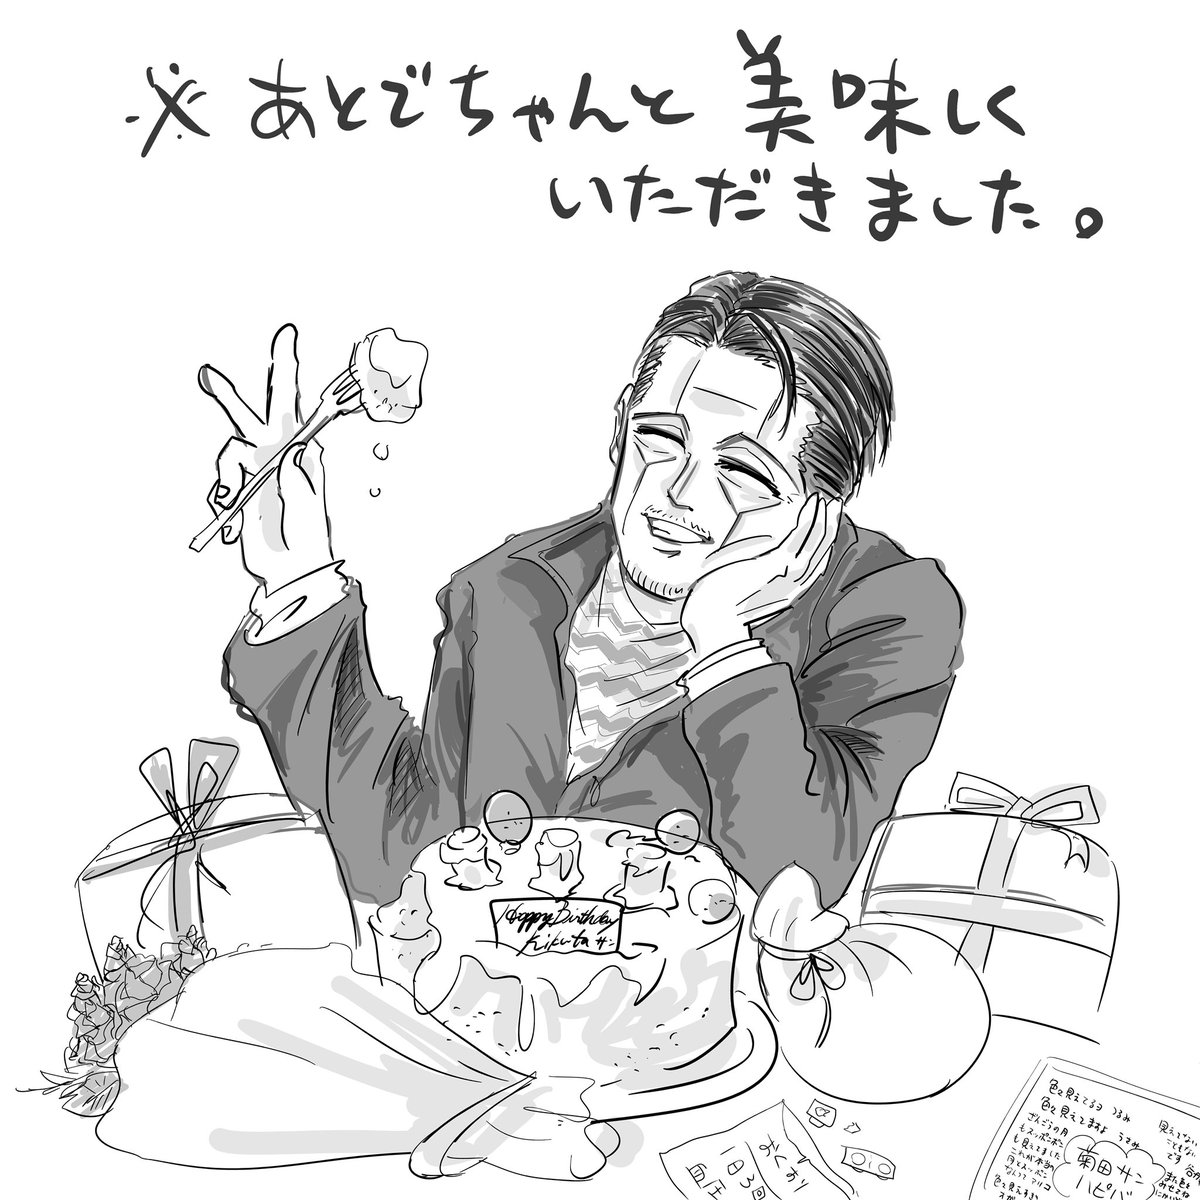 キクタサンお誕生日おめでとうございます〜💕
 #菊田杢太郎誕生祭2022 